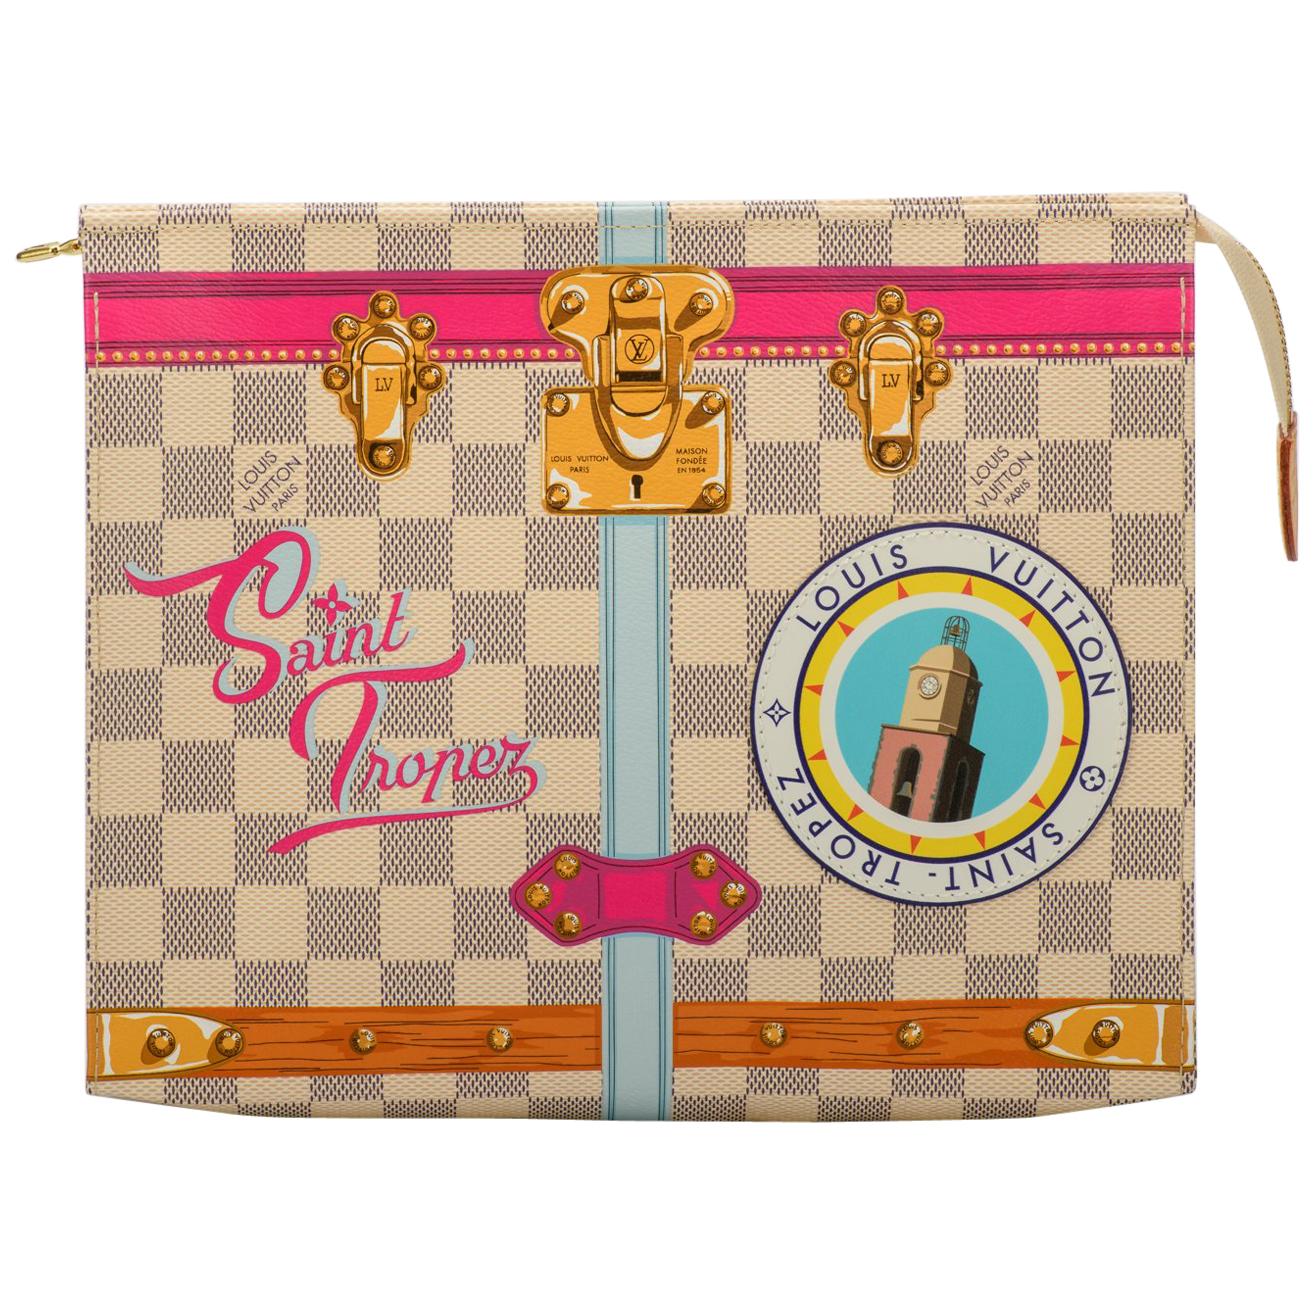 New in Box Louis Vuitton Limited Edition Damier St Tropez Trousse Bag